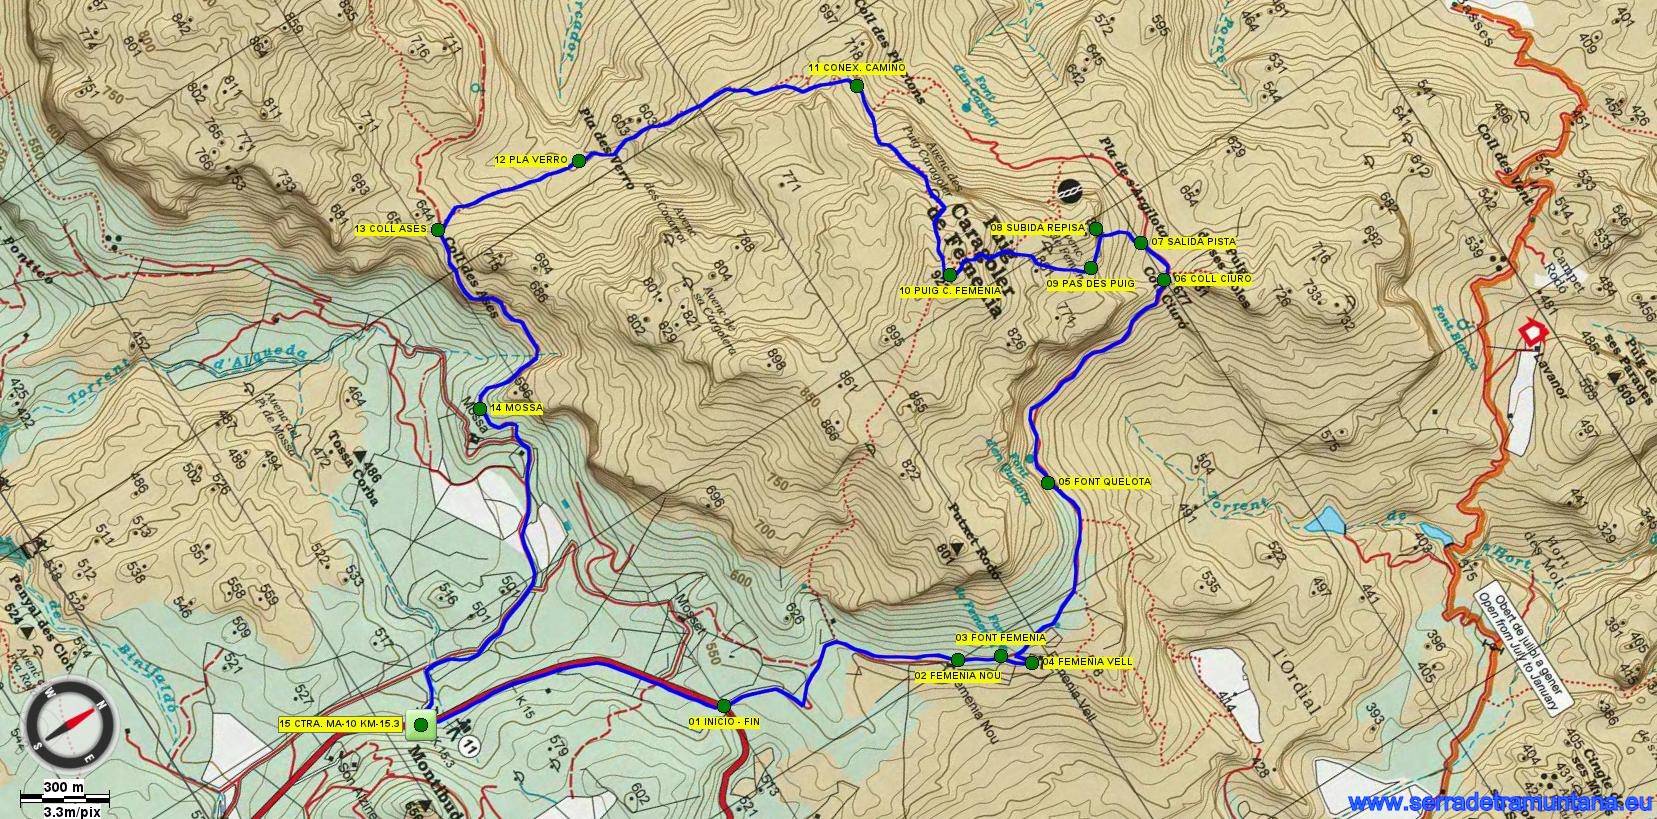 Recorte del mapa Alpina con el trazado de la ruta y los puntos de referencia más importantes